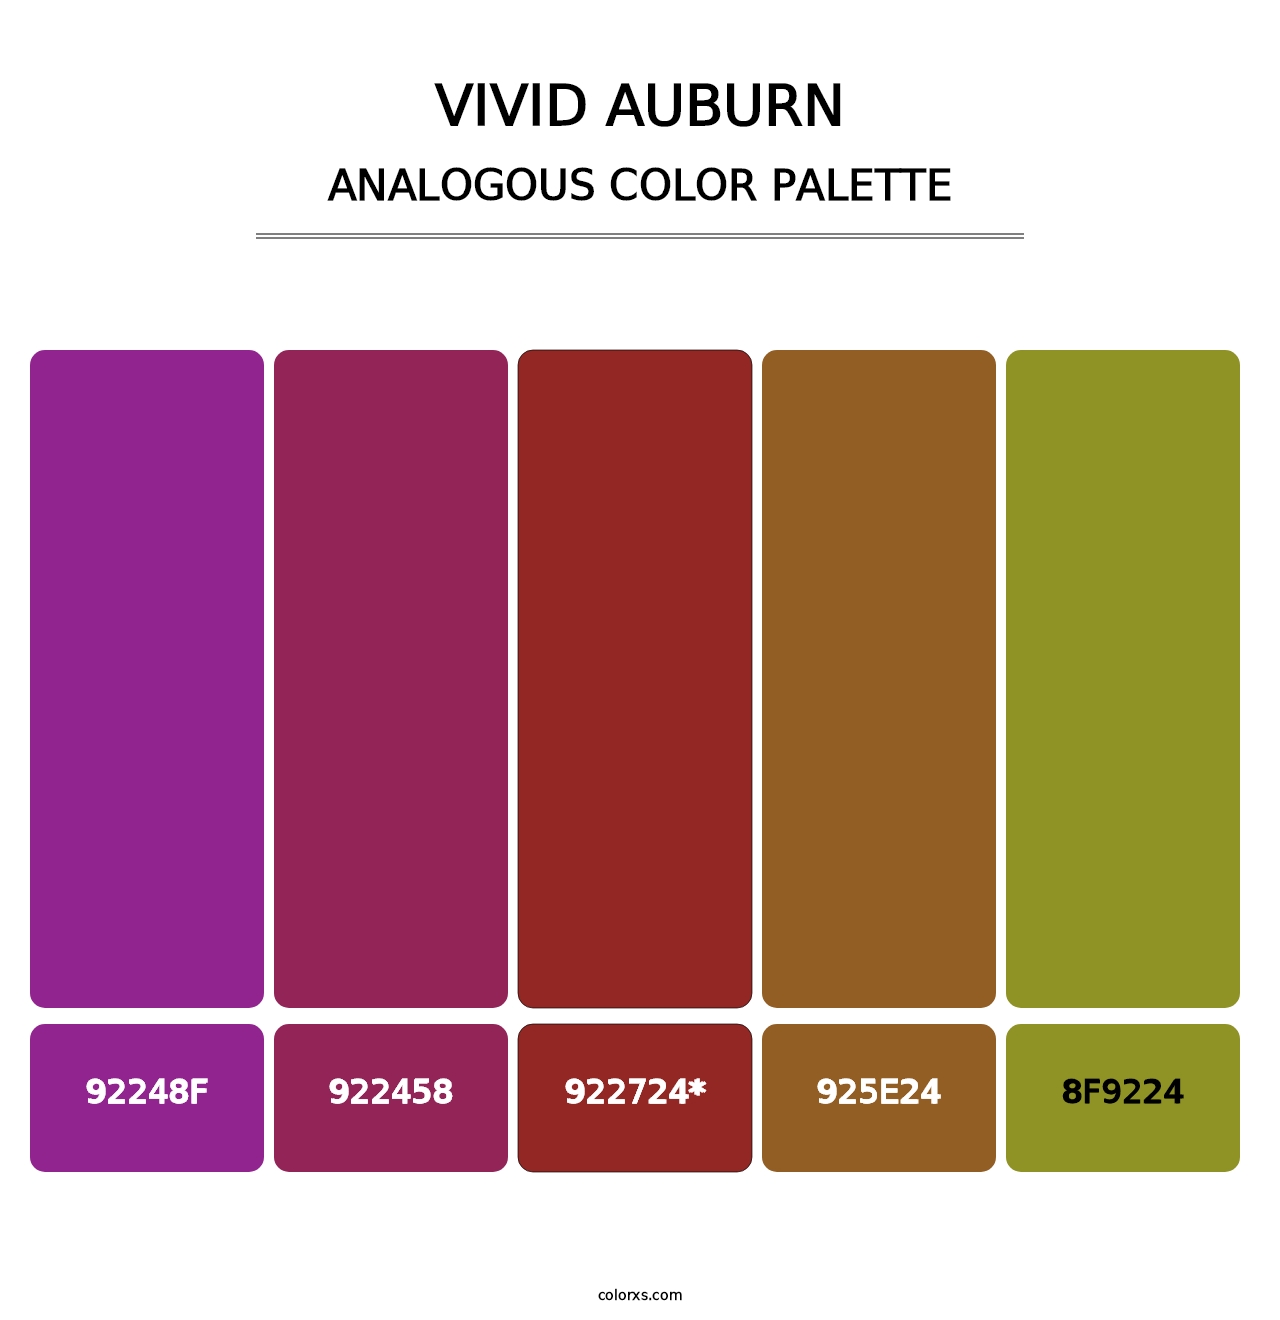 Vivid Auburn - Analogous Color Palette